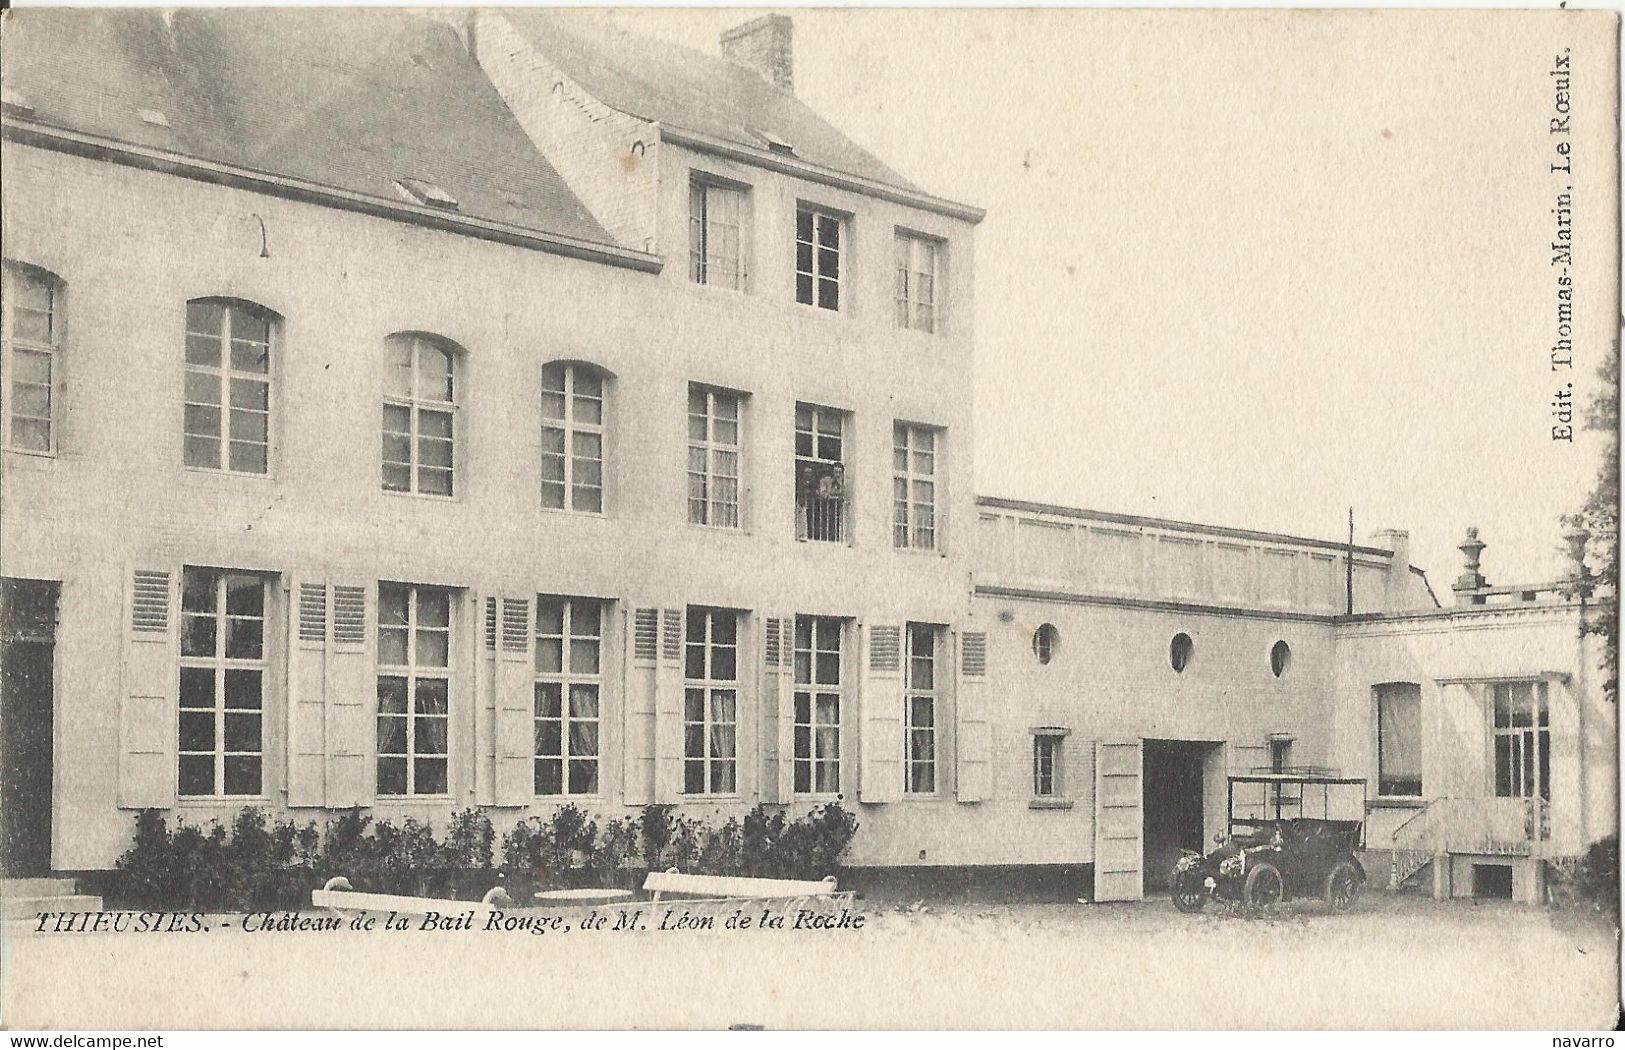 Thieusies - Château De La Bail Rouge, De Mr Léon De La Roche (Soignies, Casteau) - Soignies